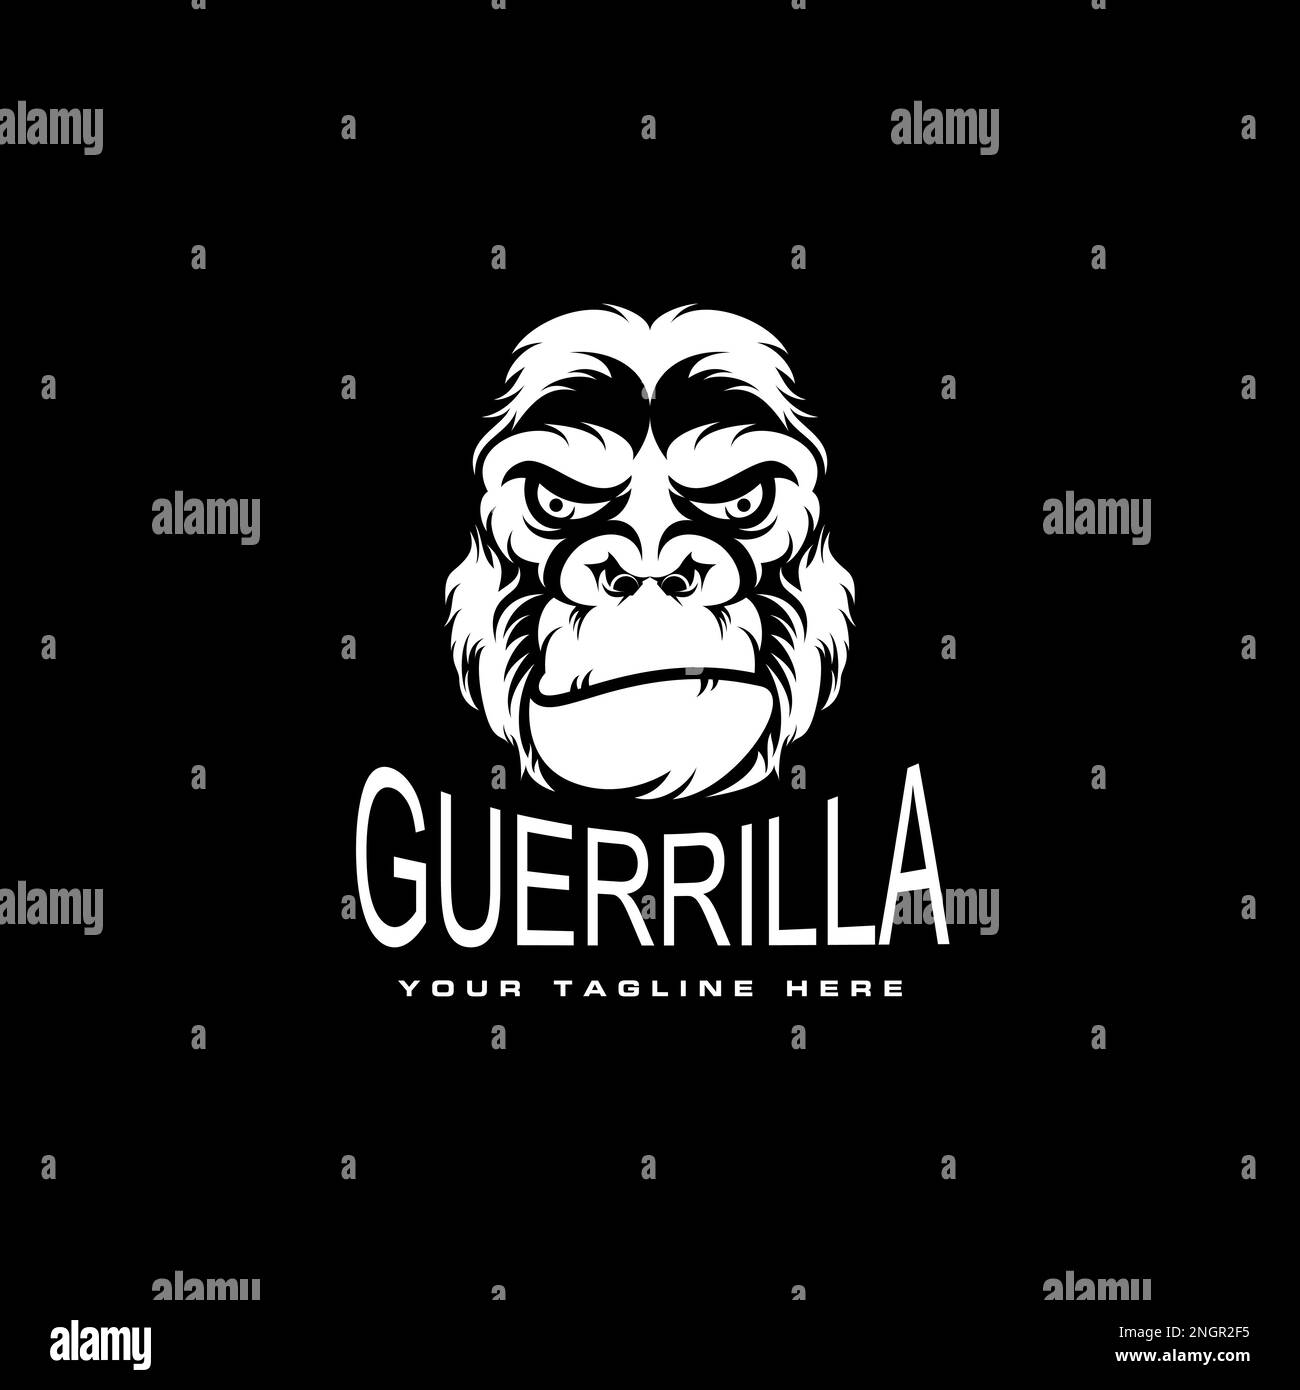 gorillakopf Illustration im wütenden oder ernsten Ausdruck Bild Grafik Symbol Logo Design abstraktes Konzept Vektortier oder Charakter Stock Vektor